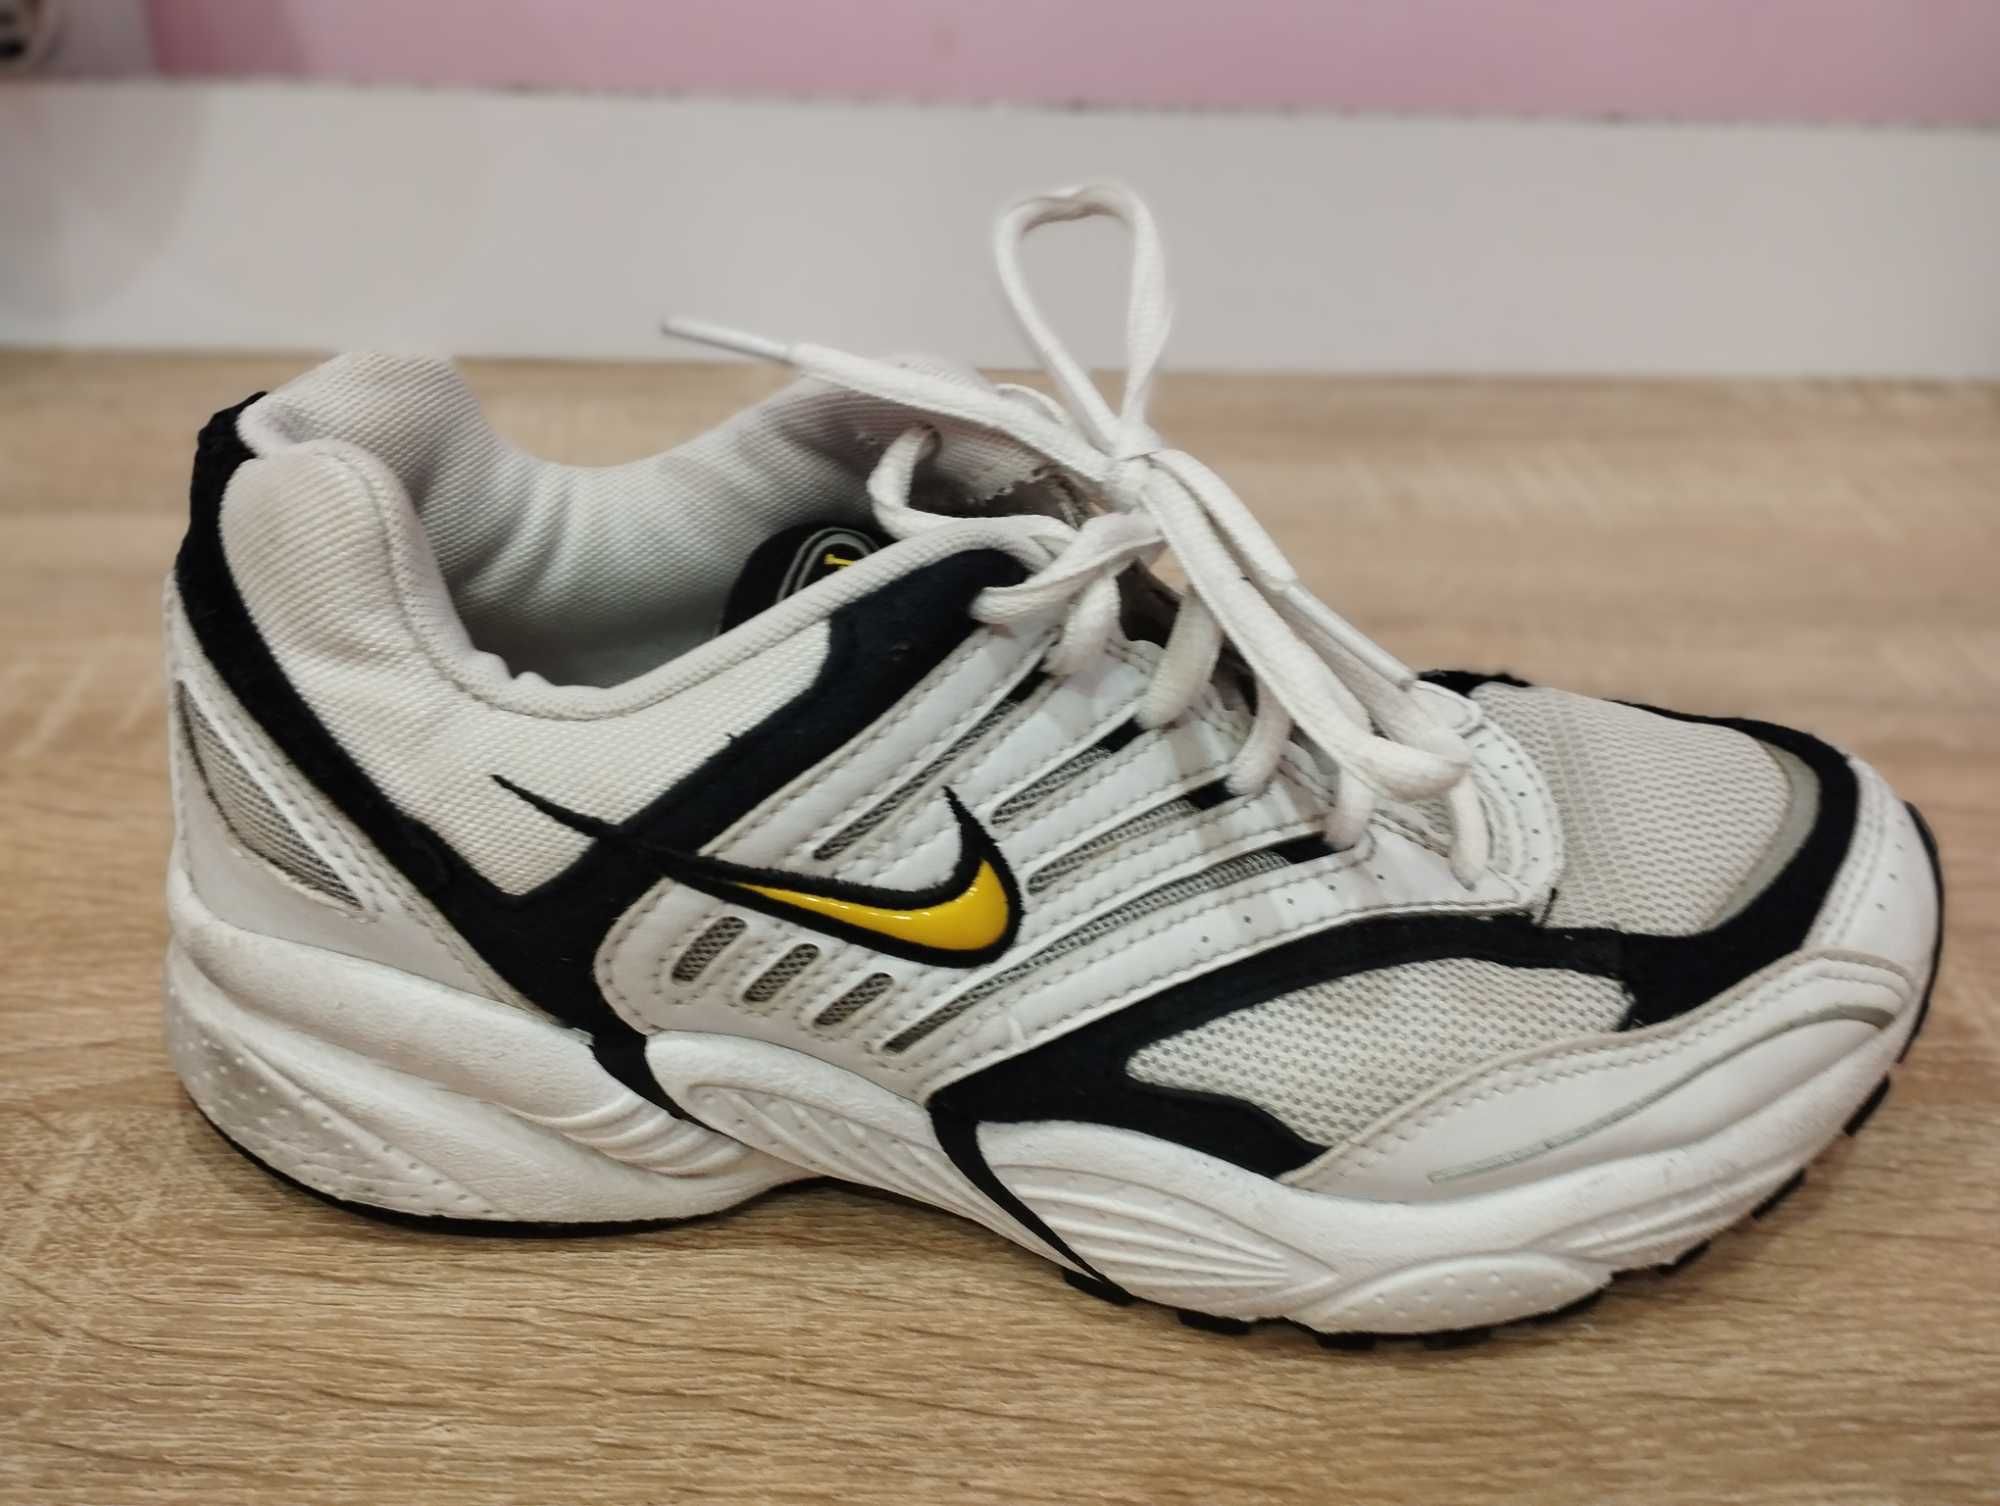 Фірмові кросівки Nike у чудовому стані. Без дефектів